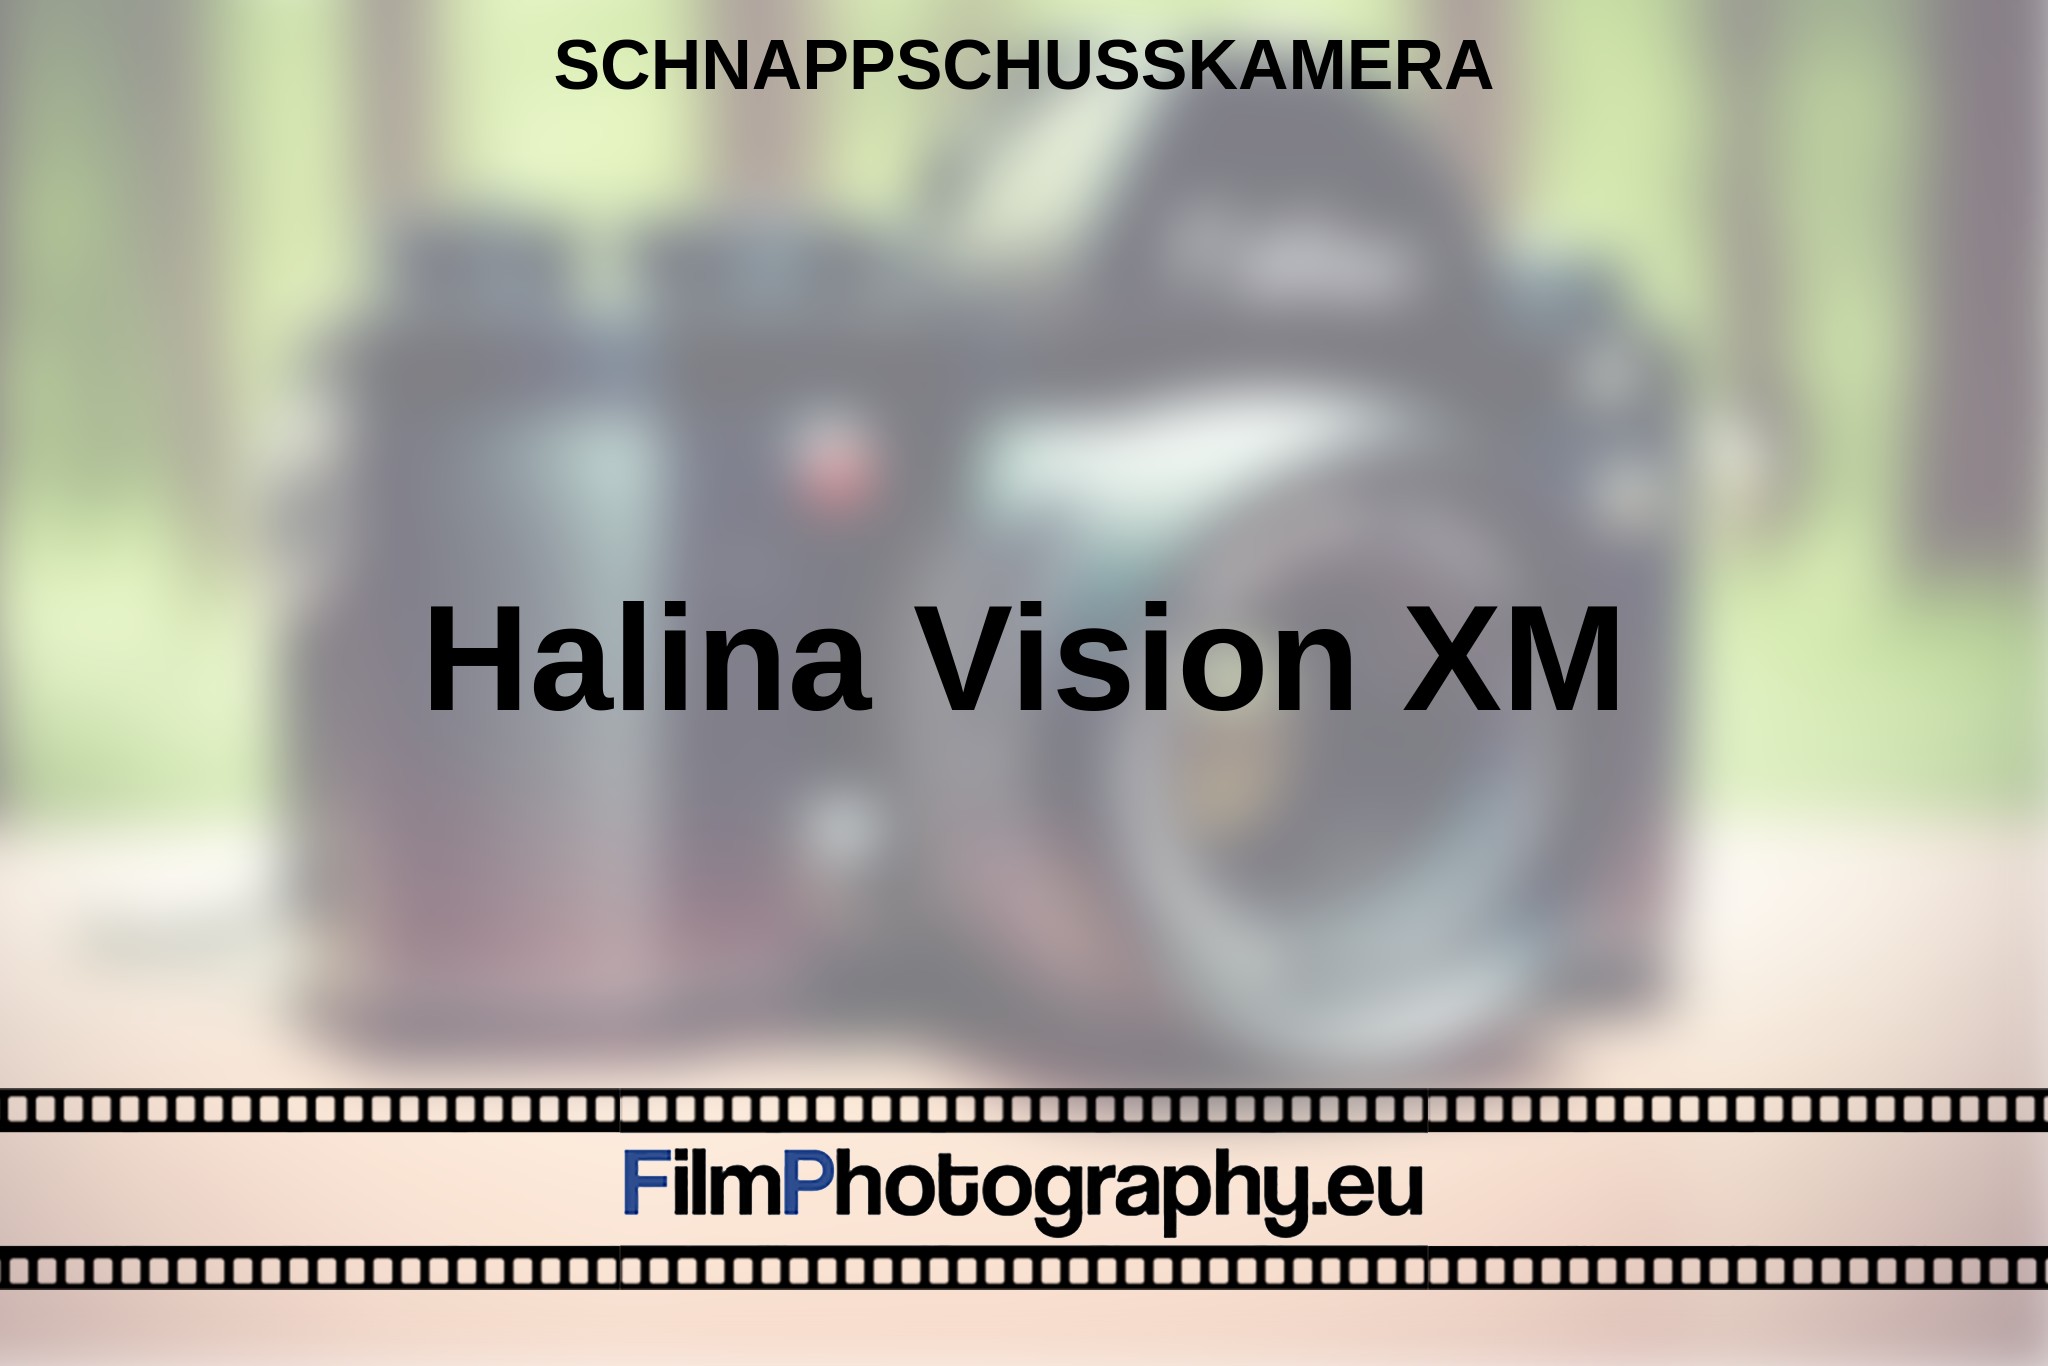 halina-vision-xm-schnappschusskamera-bnv.jpg